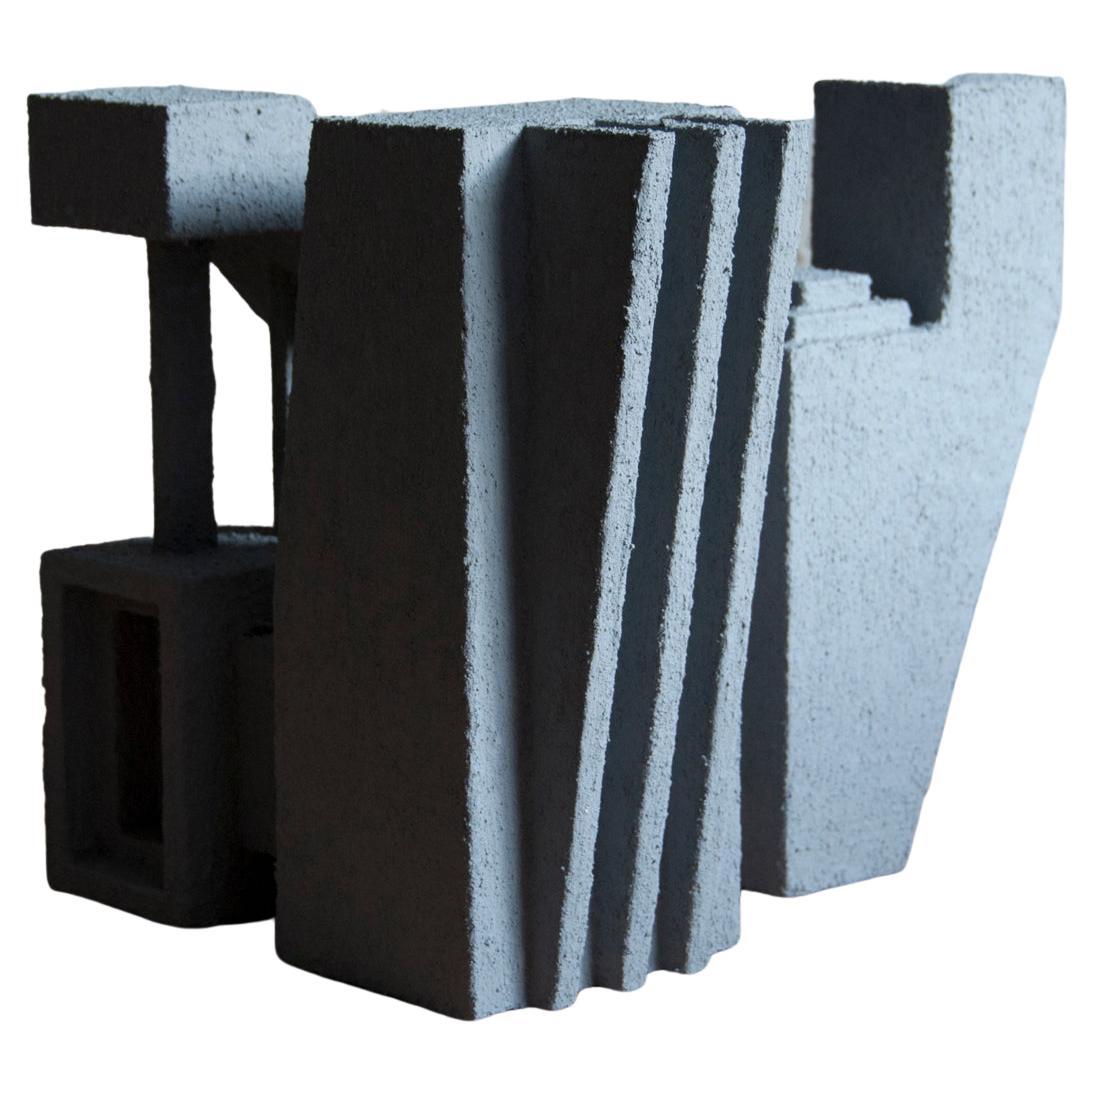 Sculpture Contemporary Geometric Constructivist Wood Concrete Grey- The Elephant For Sale